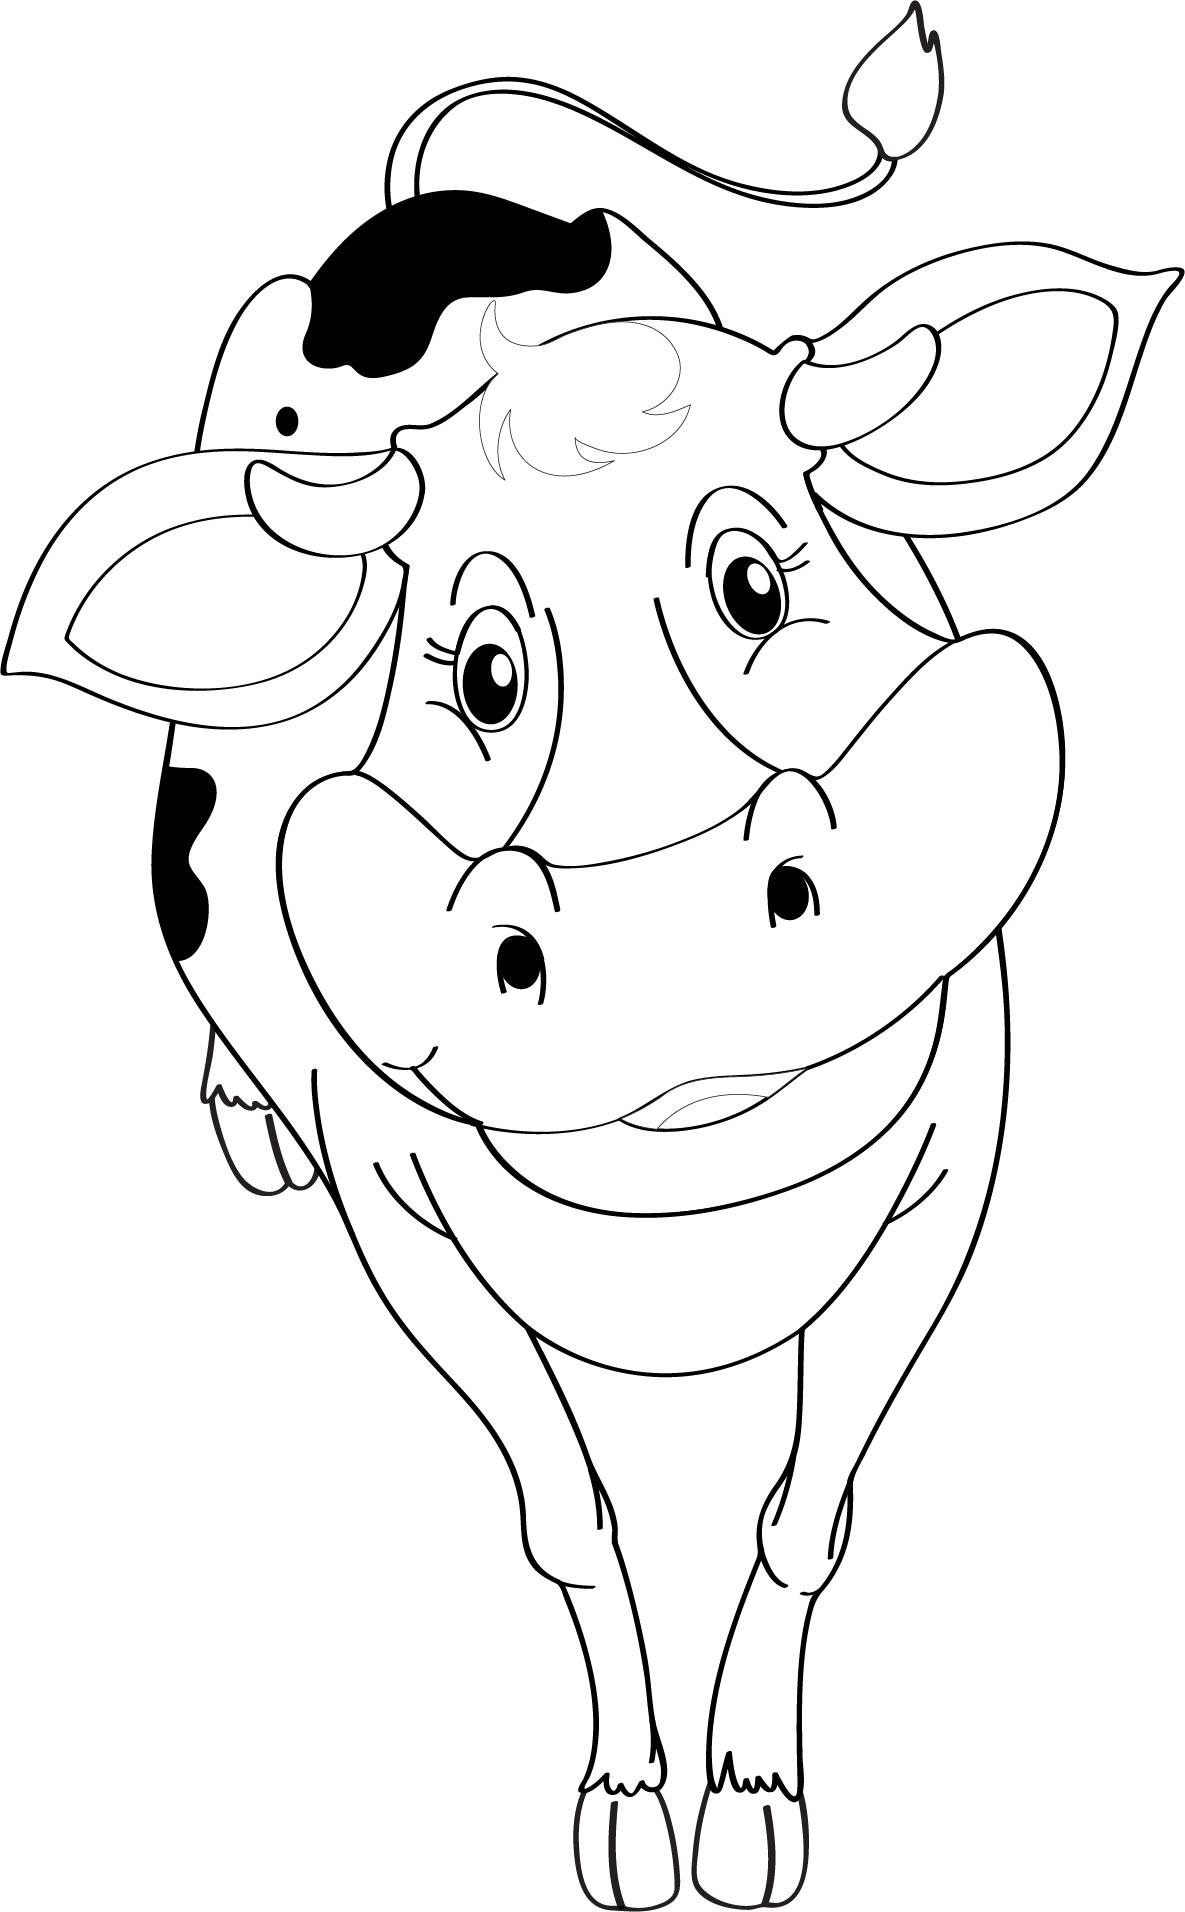 Раскраска для детей: очаровательная корова крупным планом